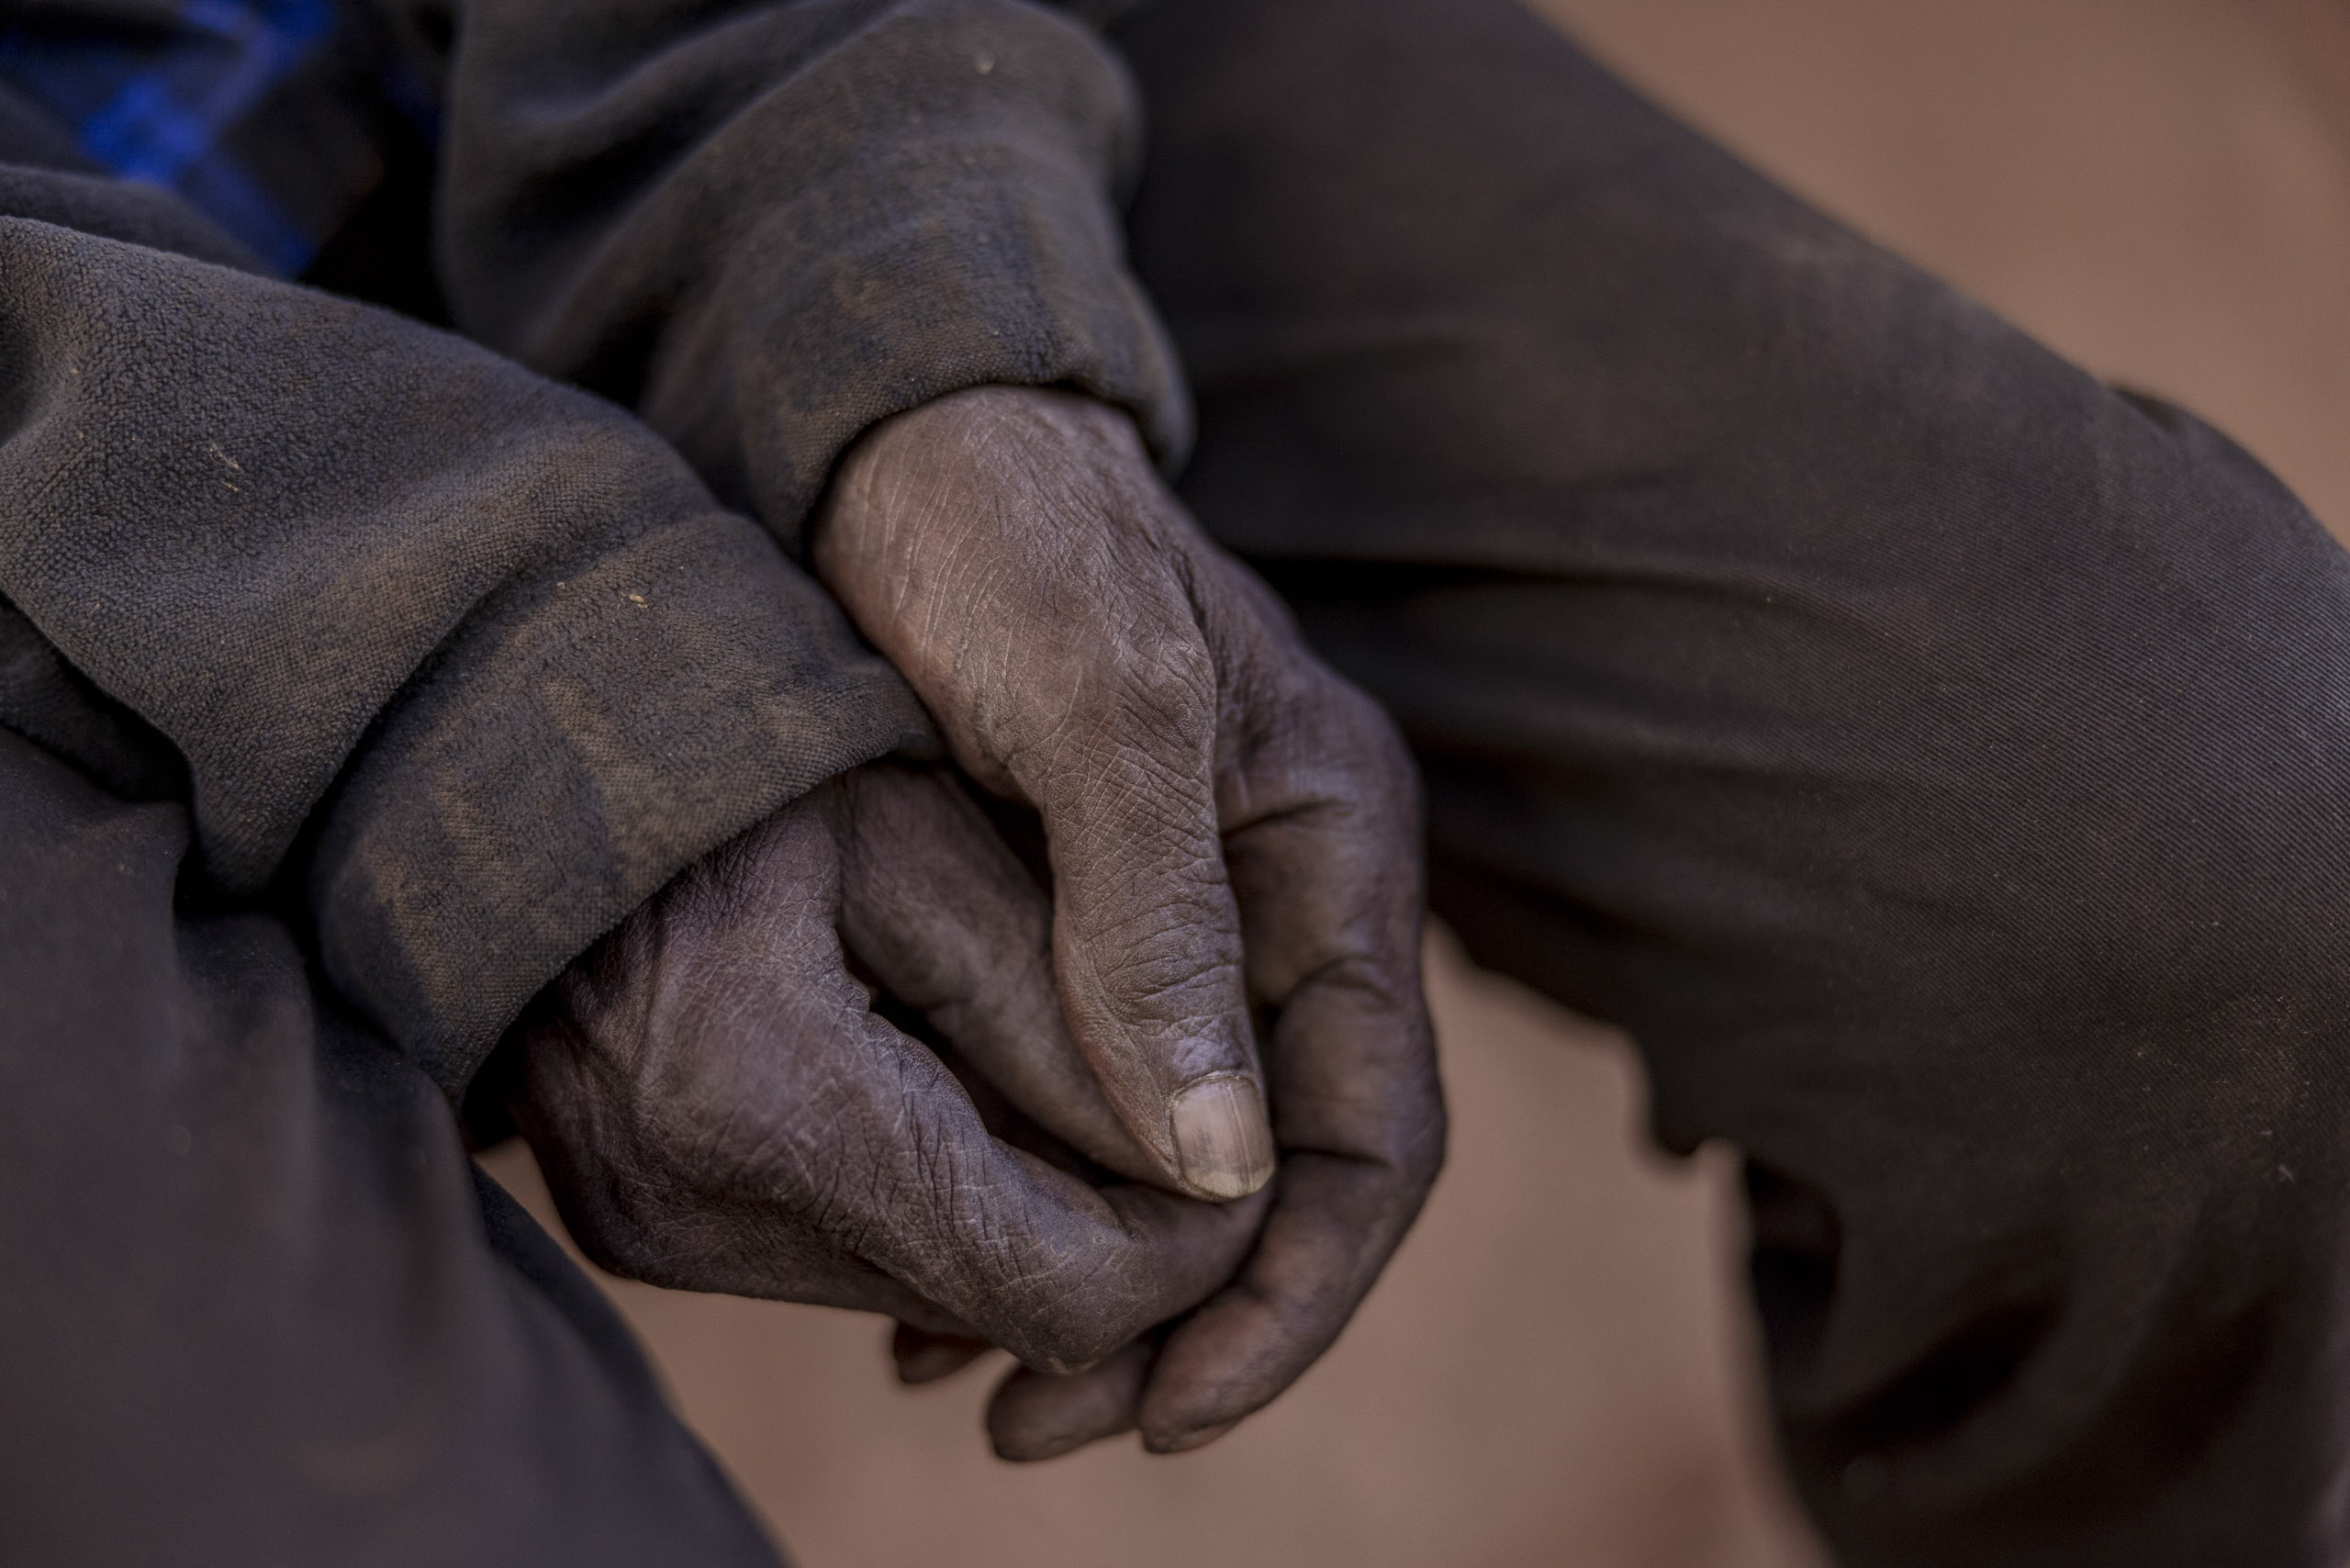 Nahaufnahme der Hände einer Person, bedeckt mit Schmutz und Dreck, über den Knien gefaltet. Die Hände sind rau und abgenutzt, was auf harte körperliche Arbeit schließen lässt. © Fotografie Tomas Rodriguez